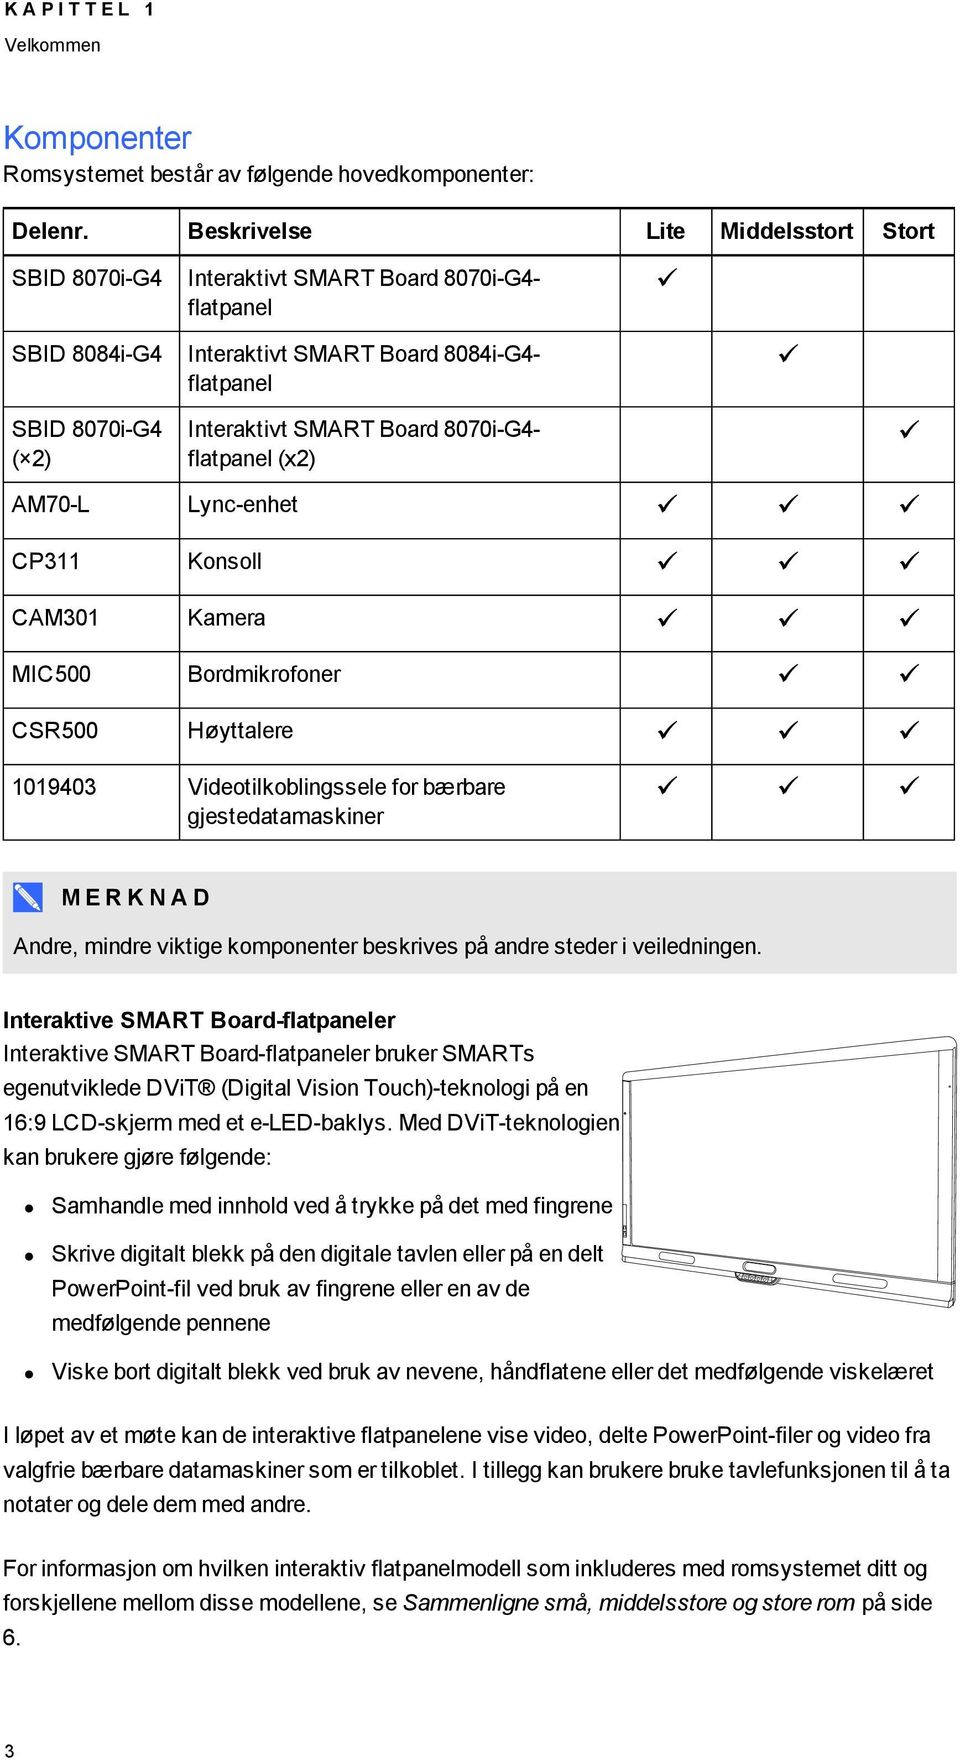 flatpanel Interaktivt SMART Board 8070i-G4- flatpanel (x2) Lync-enhet Konsoll Kamera Bordmikrofoner Høyttalere 1019403 Videotilkoblingssele for bærbare gjestedatamaskiner M E R K N A D Andre, mindre